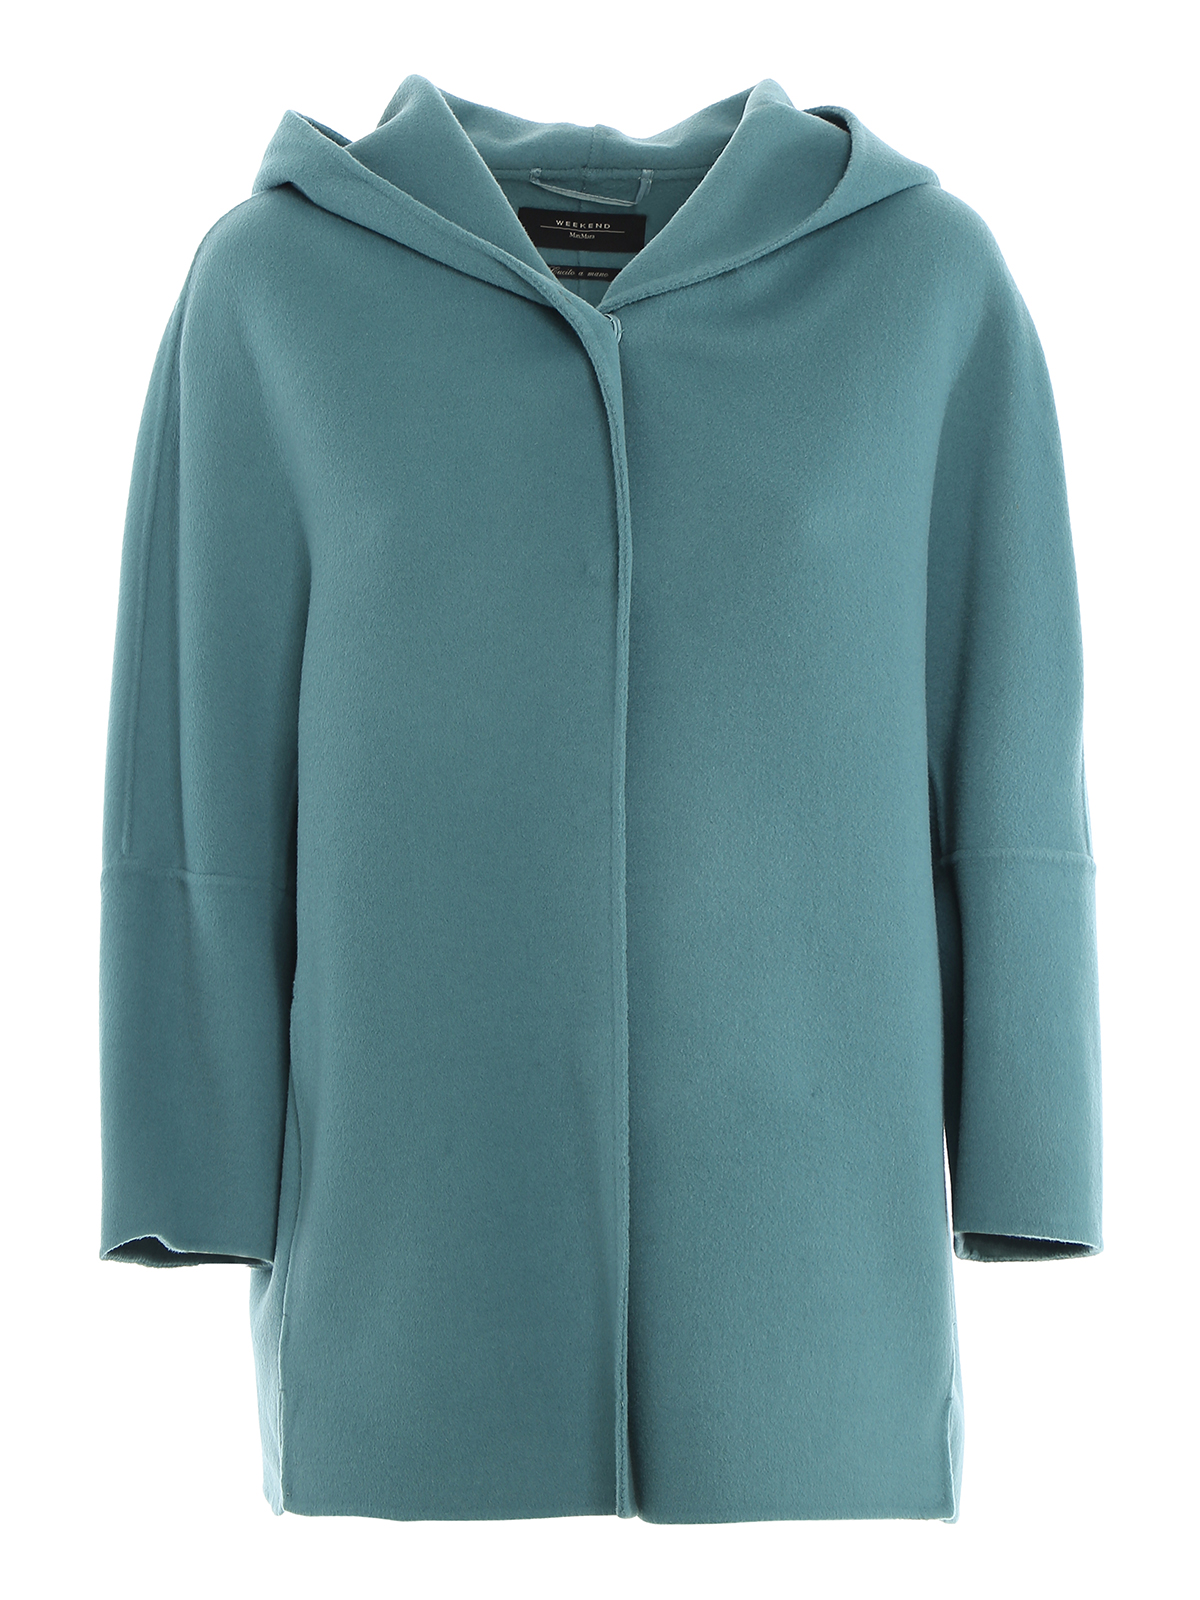 Casual jackets Weekend Max Mara - Rapace wool jacket - 50860209650069